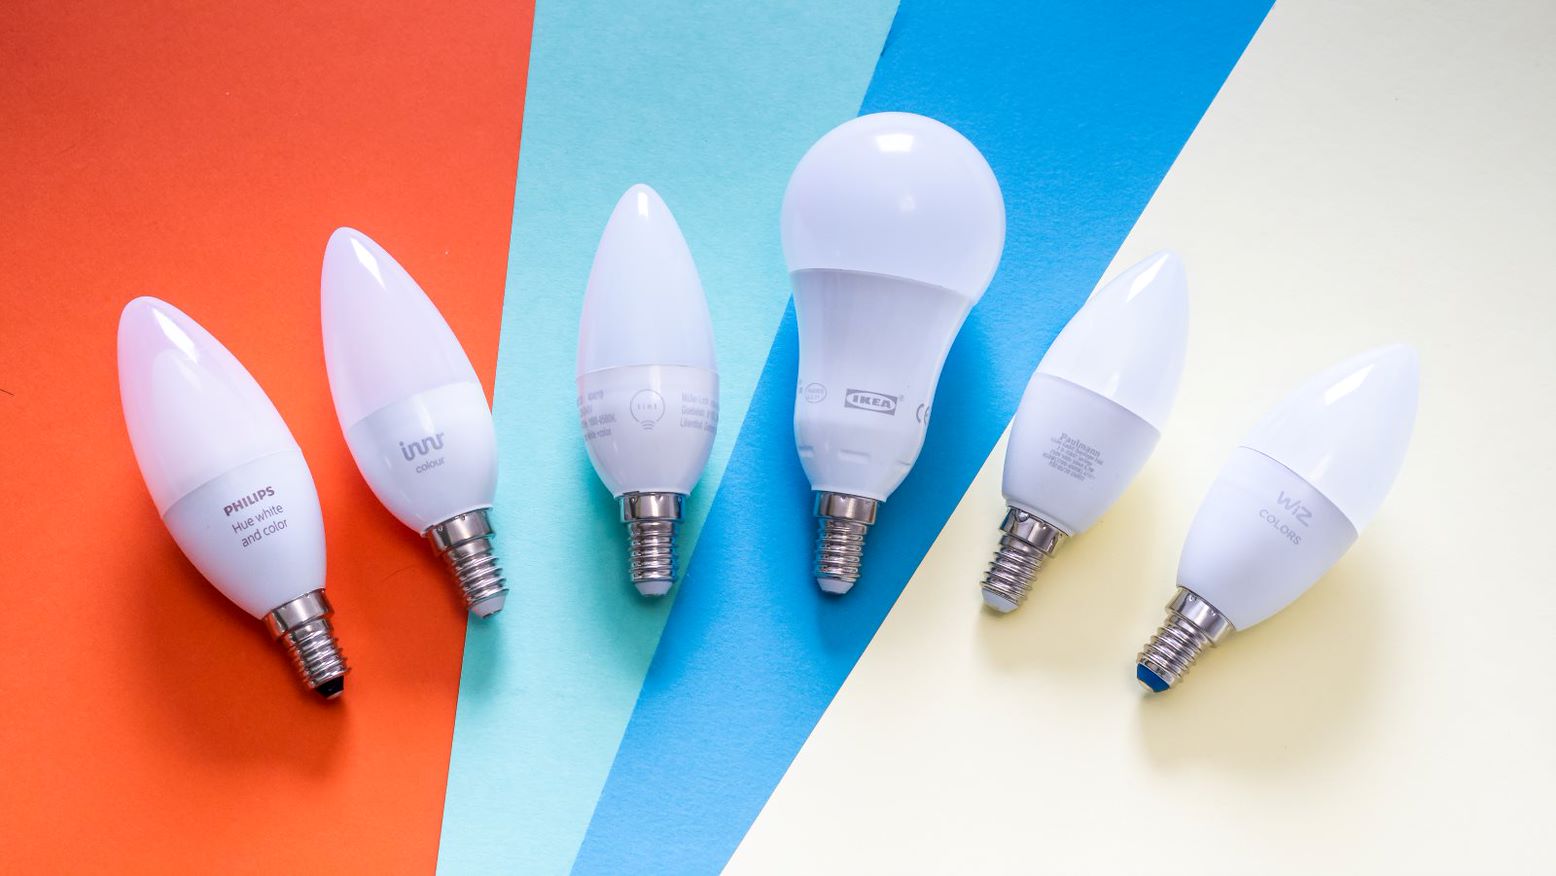 Von 15 Euro bis Hue: 6 smarte RGB-Lampen mit E14-Sockel im Vergleich |  TechStage